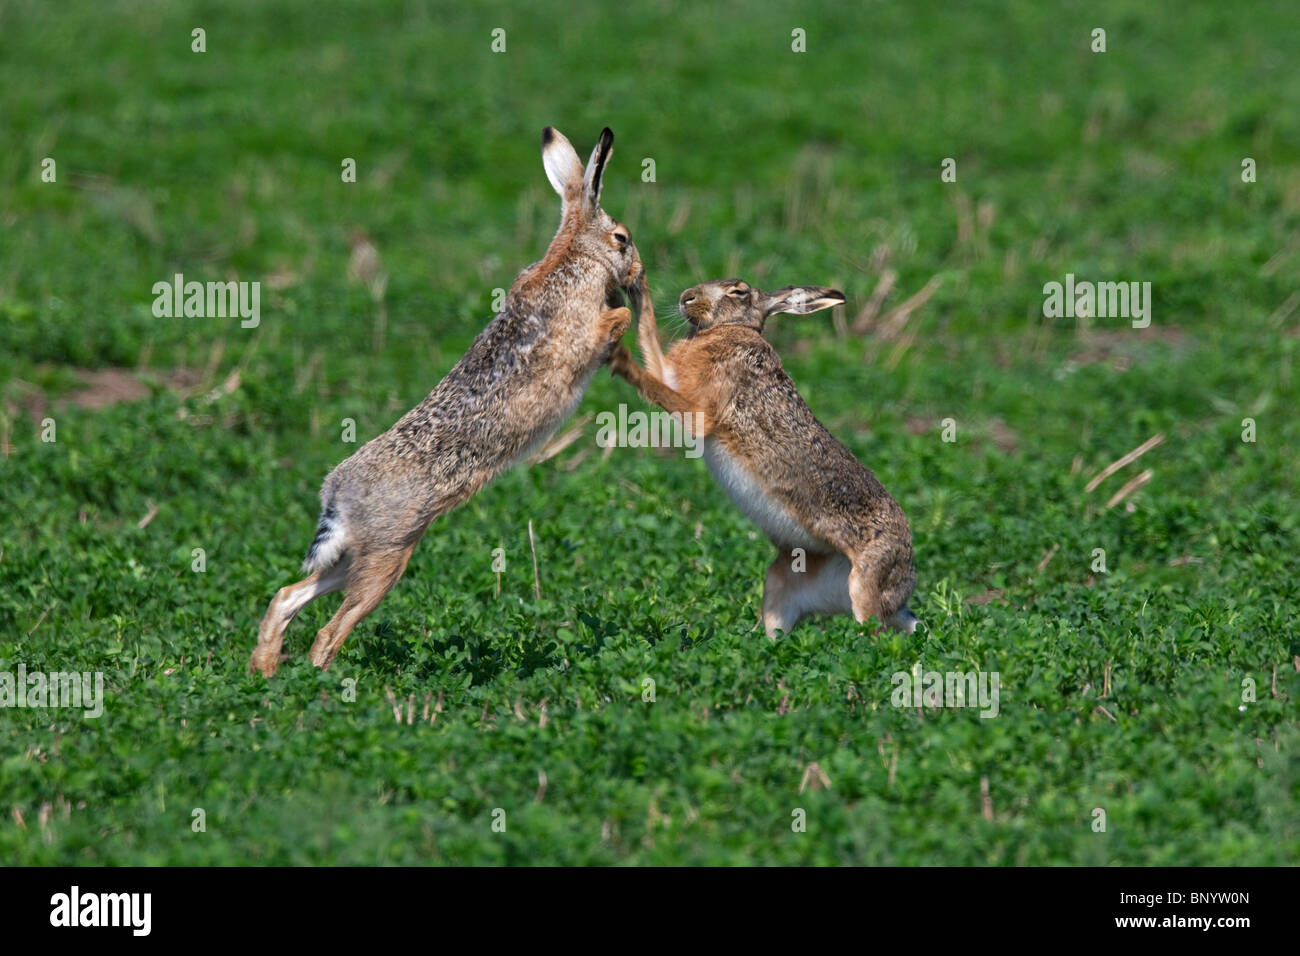 Les lièvres bruns d'Europe (Lepus europaeus) / boxe combats au champ pendant la saison de reproduction, Allemagne Banque D'Images